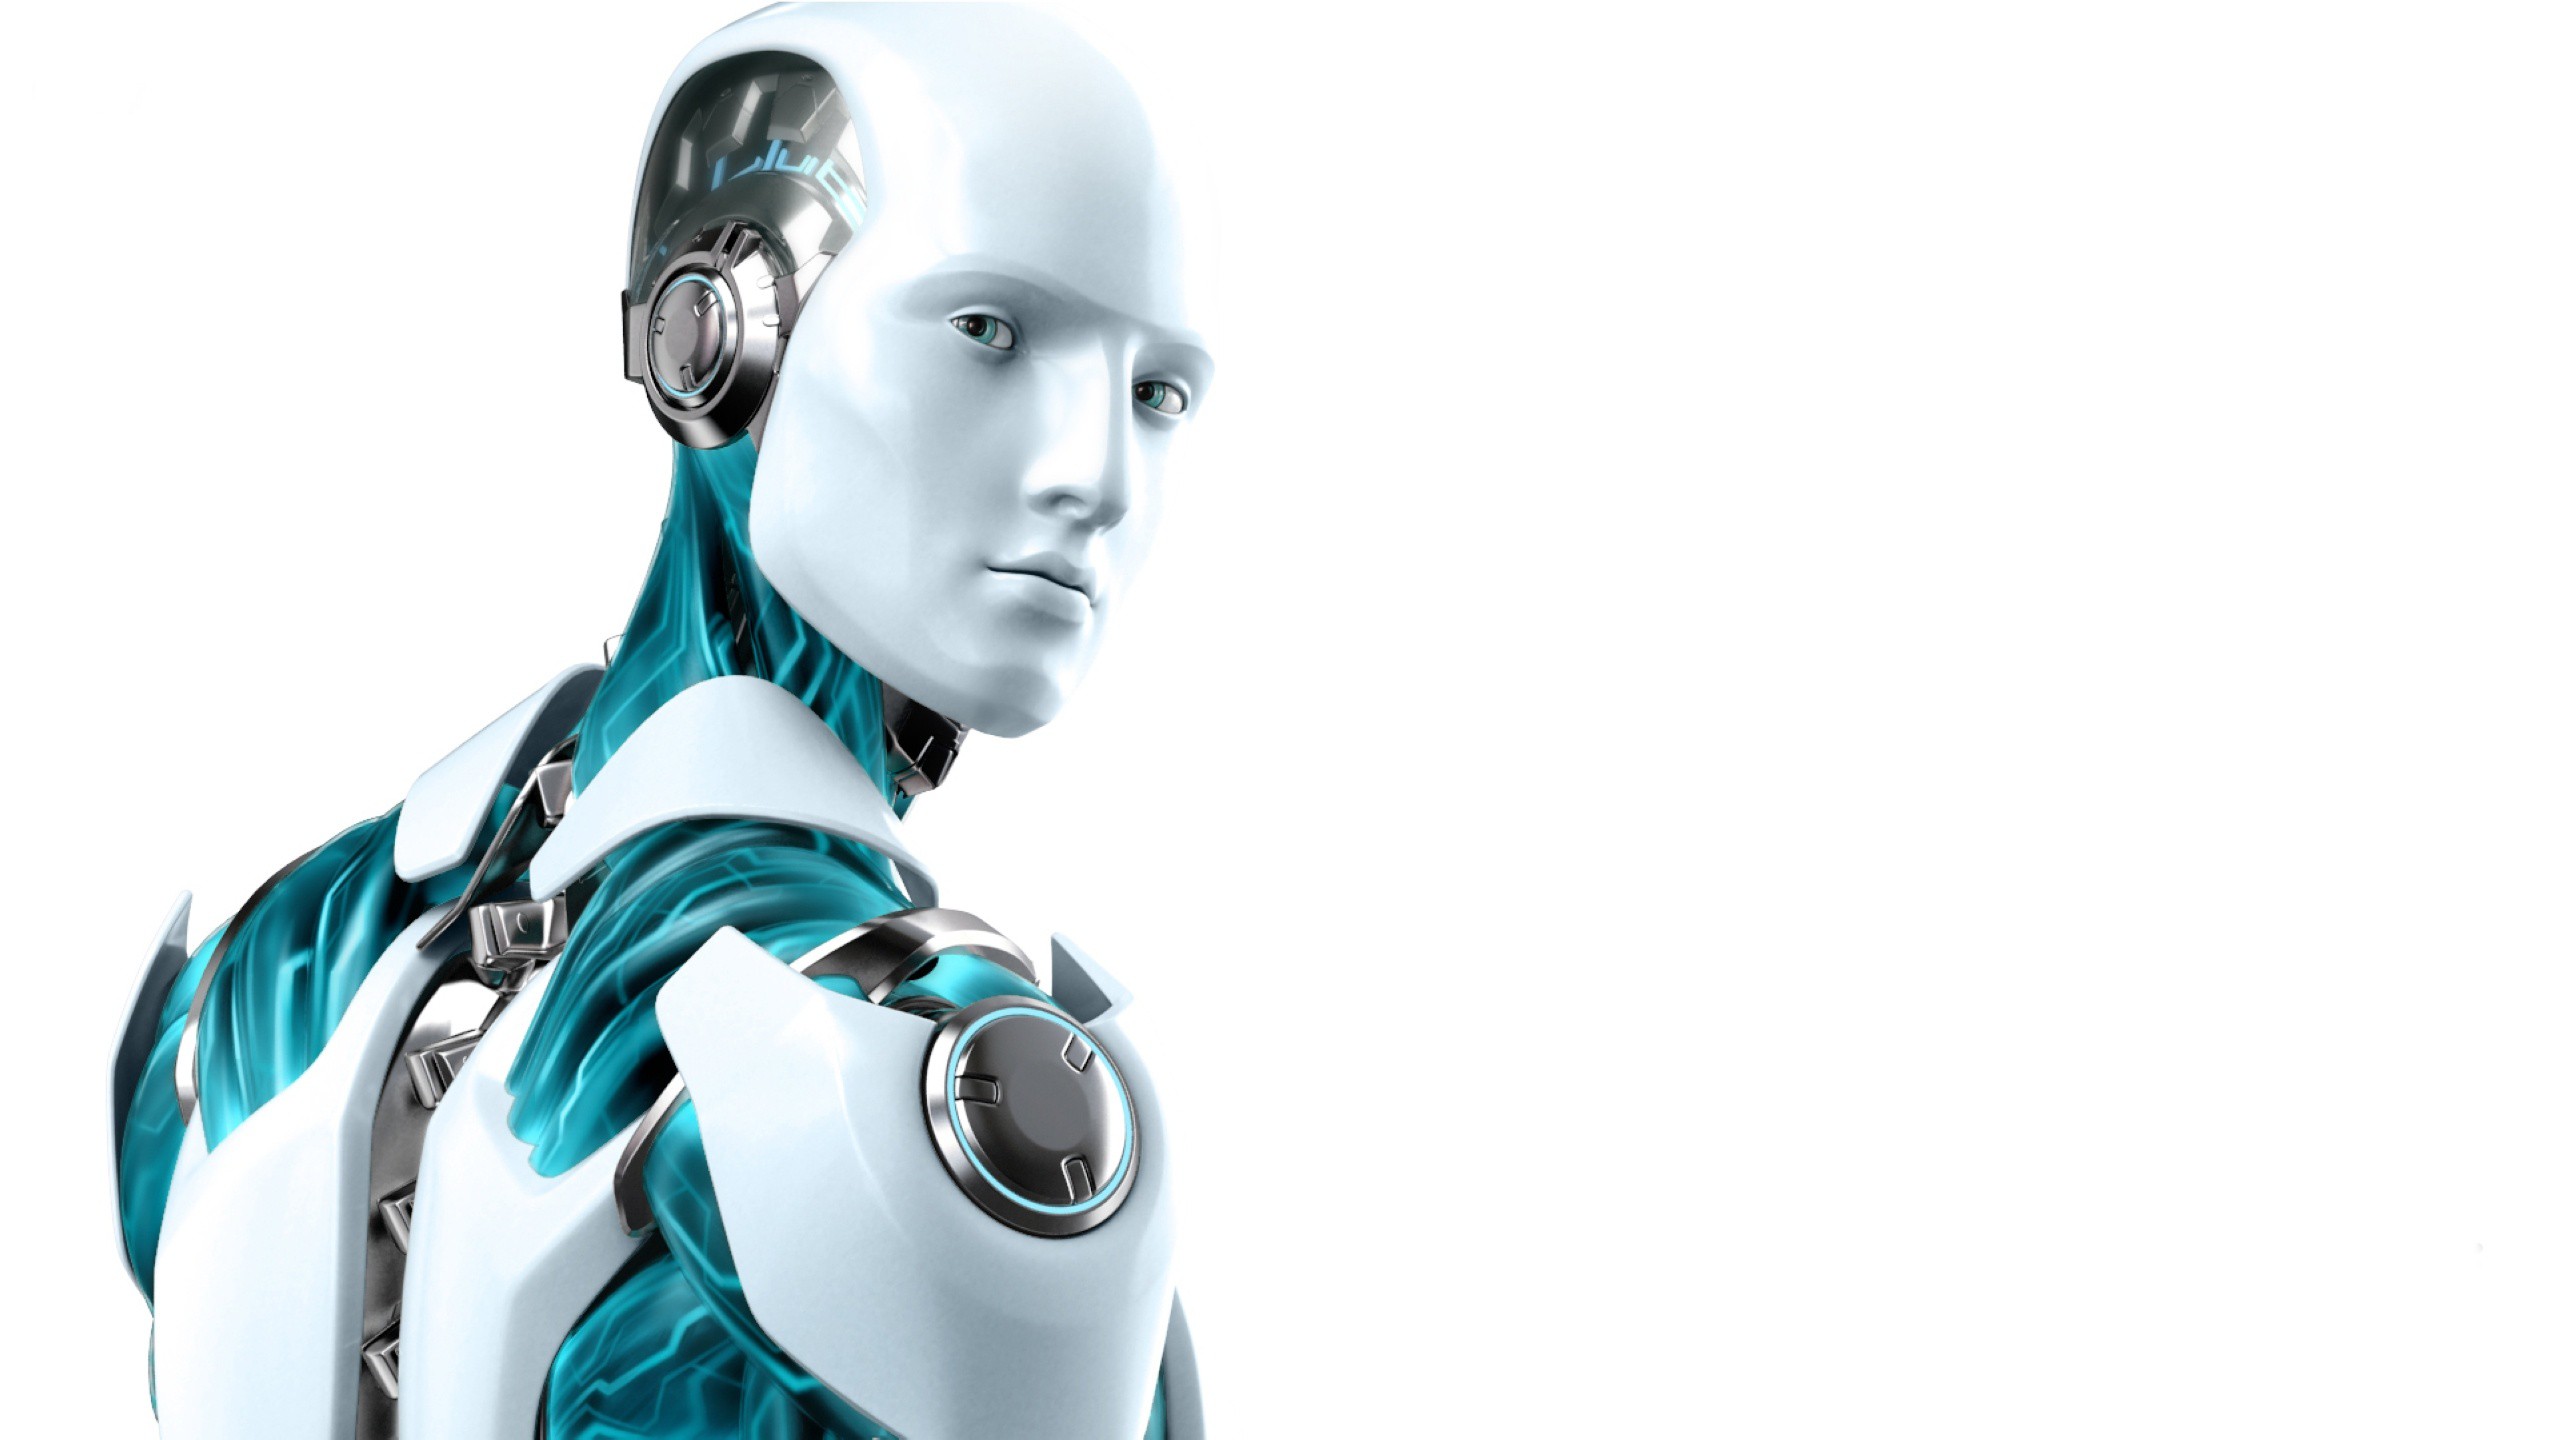 Искусственный интеллект отчеты. ESET nod32 робот. ESET nod32 Antivirus лого. Робот с искусственным интеллектом. Искусственный интеллект на белом фоне.